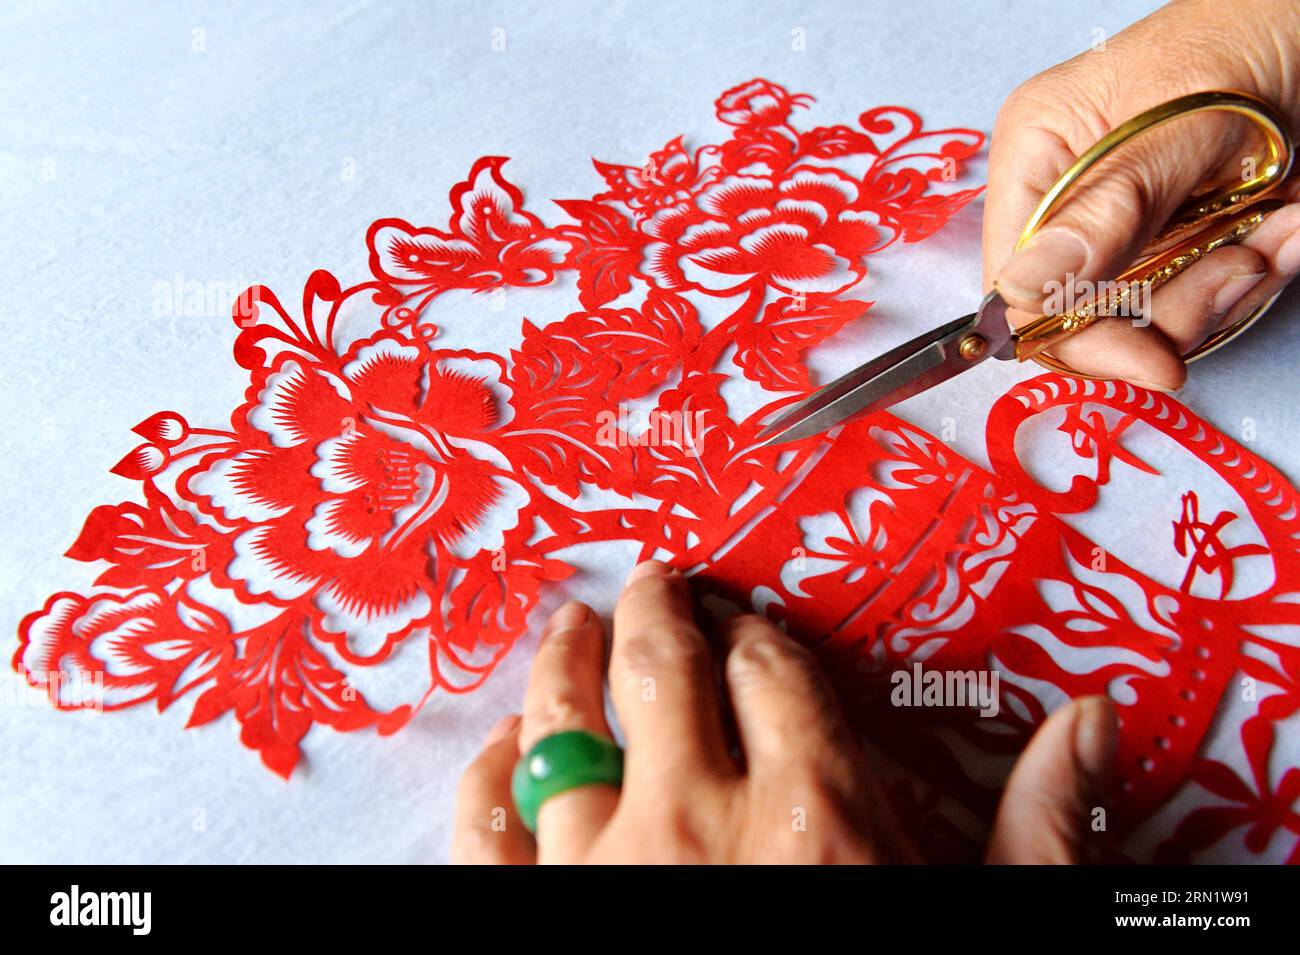 HEJIAN, 21. Januar 2015 -- der Volkskünstler Song Baoshu macht eine Taschenschrift in Hejian City, nordchinesische Provinz Hebei, 21. Januar 2015. Mit einer Schere und etwas Papier können chinesische Handwerker Papierschnitte mit komplexen Designs und Bildern erstellen. Als das Papercutting im Blut läuft, widmet sich der 61-jährige Song Baoshu der Erhaltung des Papercutts. (wh) CHINA-HEBEI PROVINCE-HEJIAN-PAPERCUTTINGS(CN) ZhuxXudong PUBLICATIONxNOTxINxCHN Hejian Jan 21 2015 Volkskünstler Song Baoshu schneidet in Hejian City Nordchina S Hebei Province 21 2015 mit einer Schere und etwas Papier Chi Stockfoto